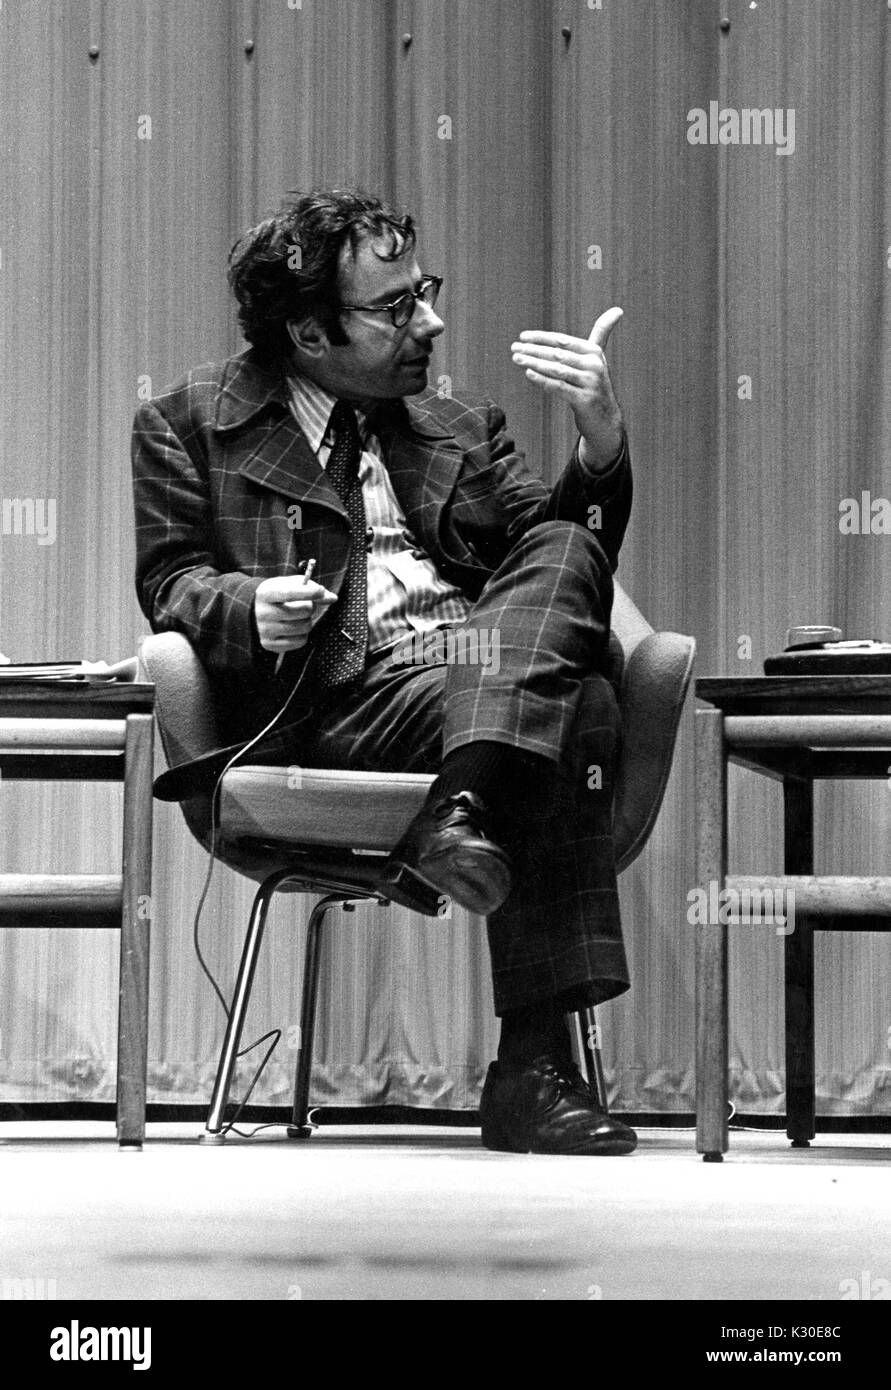 Prominente American critico sociale e autore Marcus Raskin sul palco di American University Symposium seduto su una sedia che indossa un abito, 21 febbraio 1976. Foto Stock